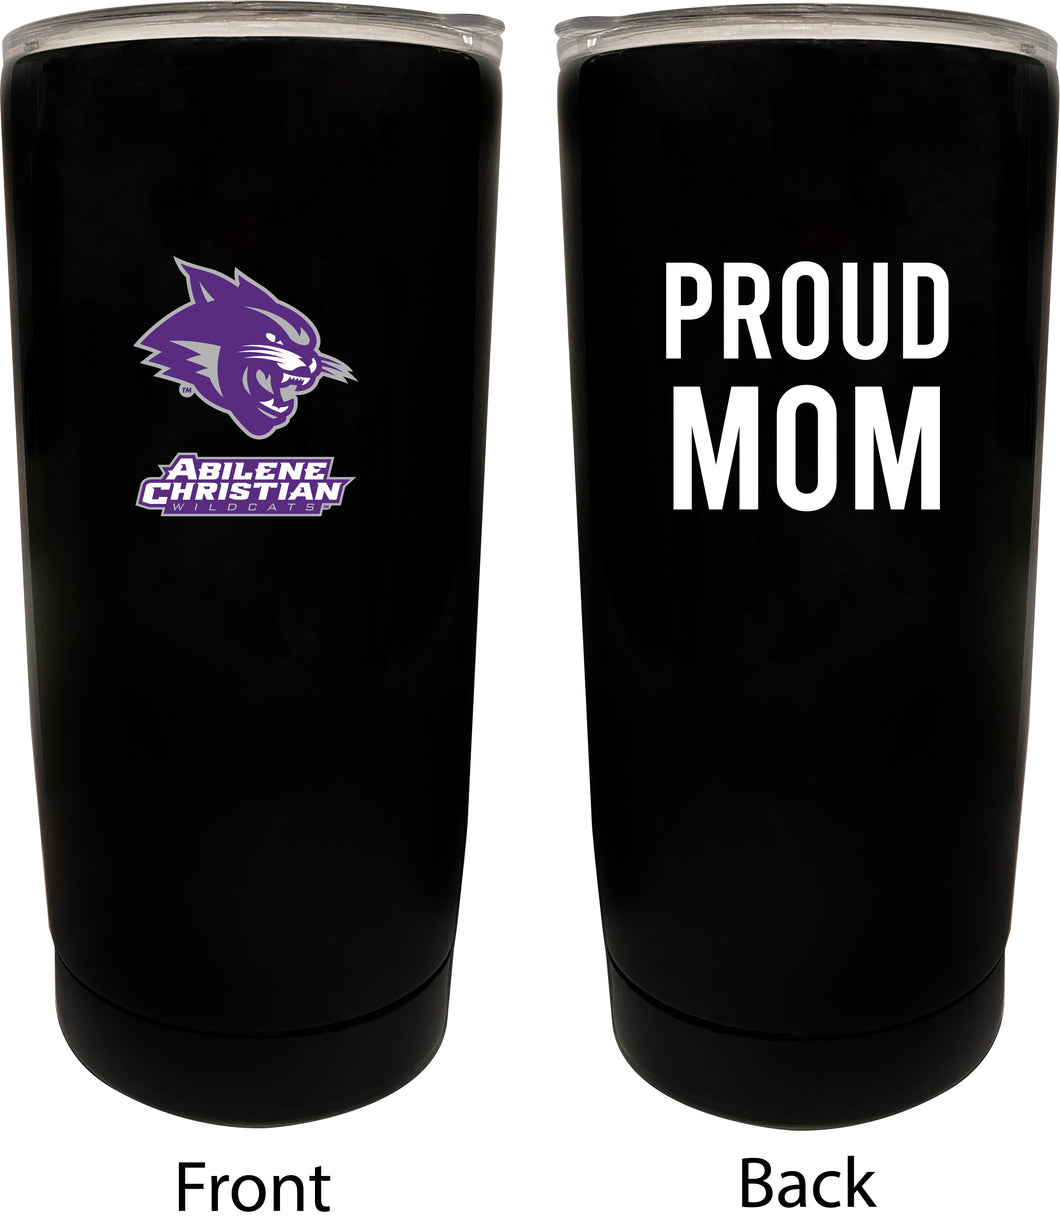 Abilene Christian University NCAA Insulated Tumbler - 16oz Stainless Steel Travel Mug Proud Mom Design Black